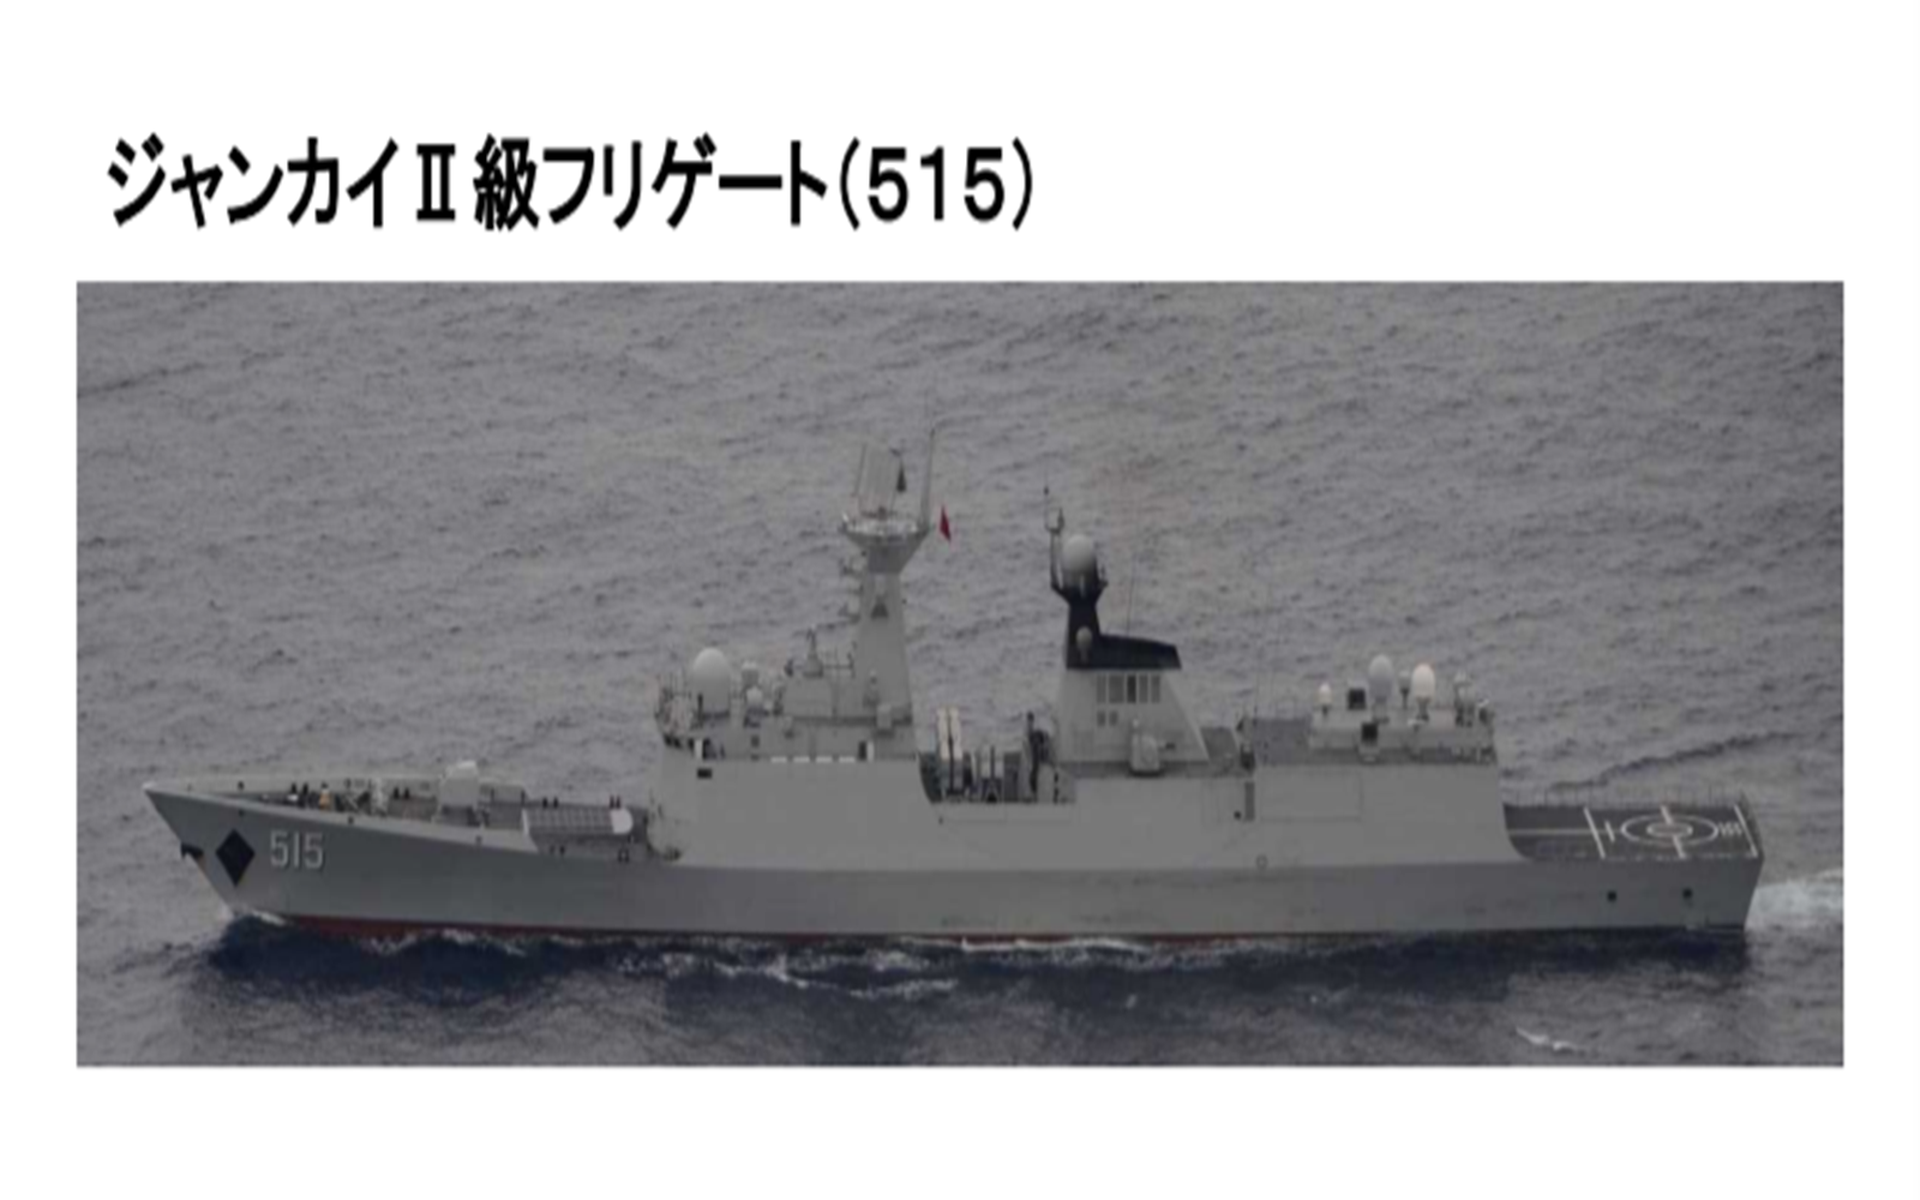 中国军舰穿越与那国岛与台湾岛海域北上日媒发现两大不寻常之处 西网中文网 全球